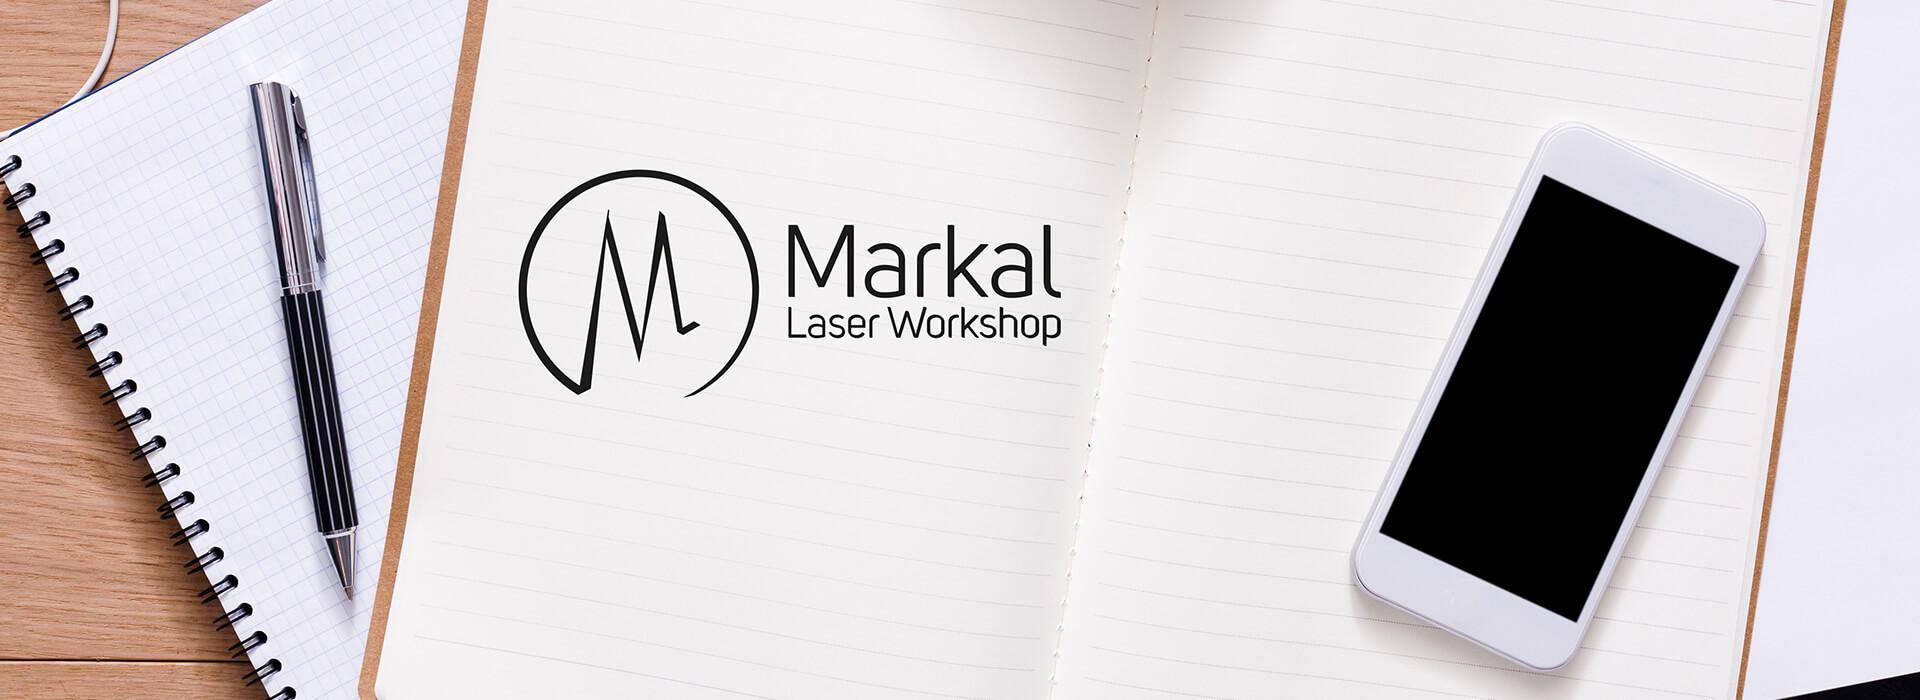 Contatti: Markal personalizzazioni con taglio laser